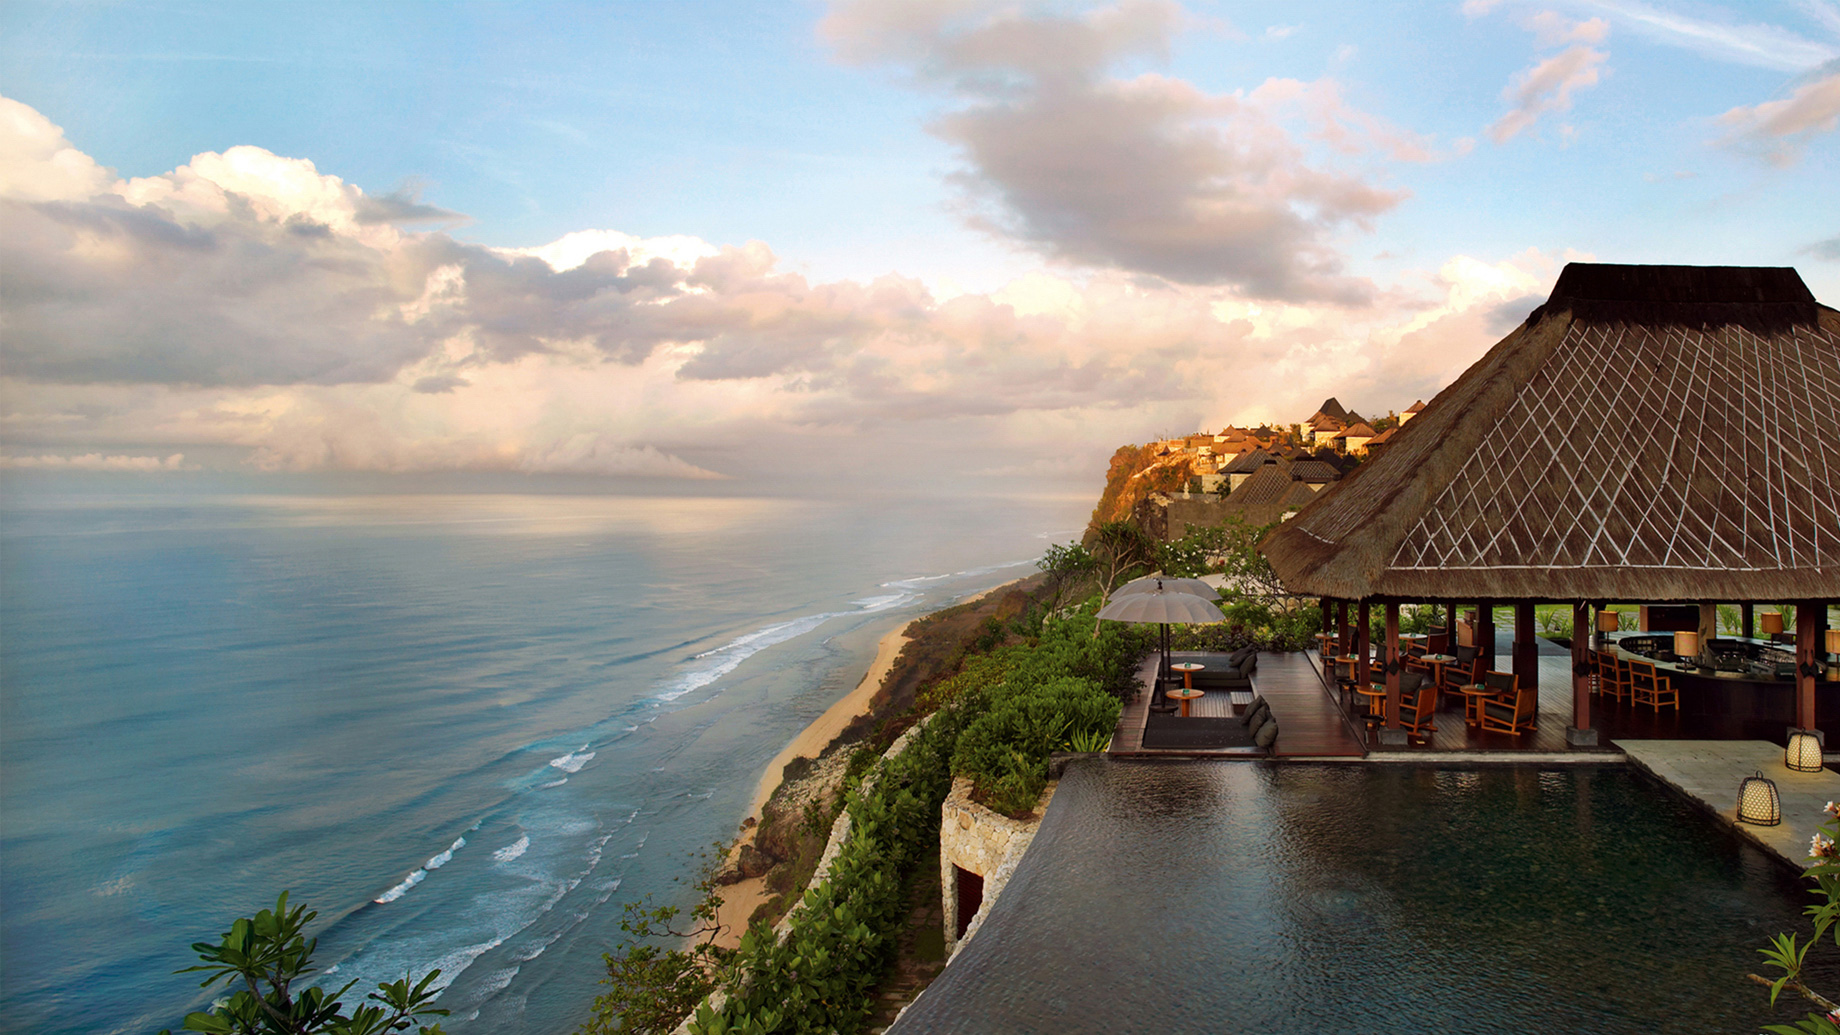 Bvlgari Resort Bali - Uluwatu, Bali, Indonesia